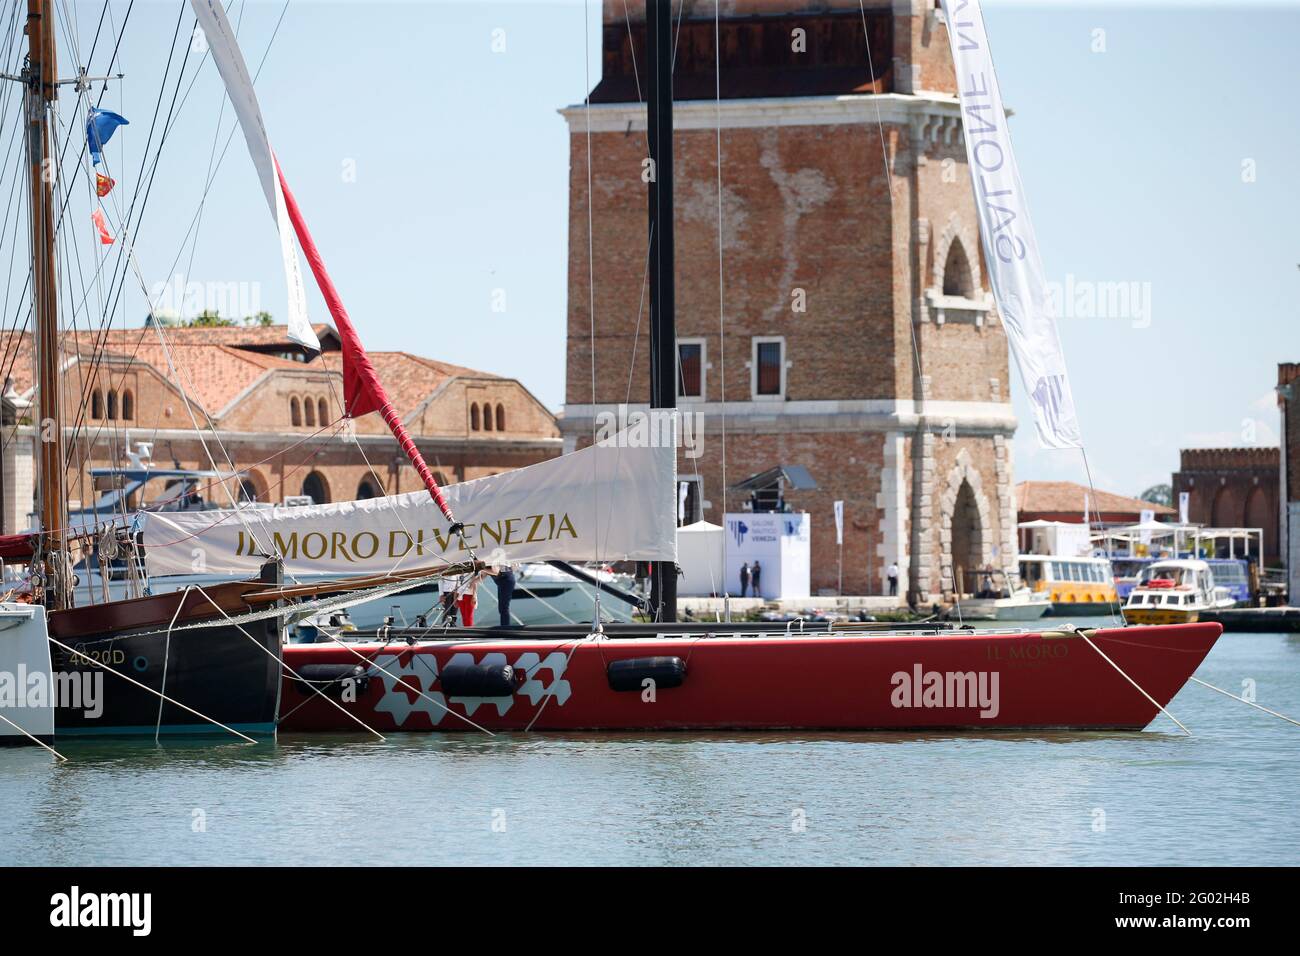 L'édition 2021 du salon nautique de Venise à Arsenale de Venise Italie mai 2021 Banque D'Images